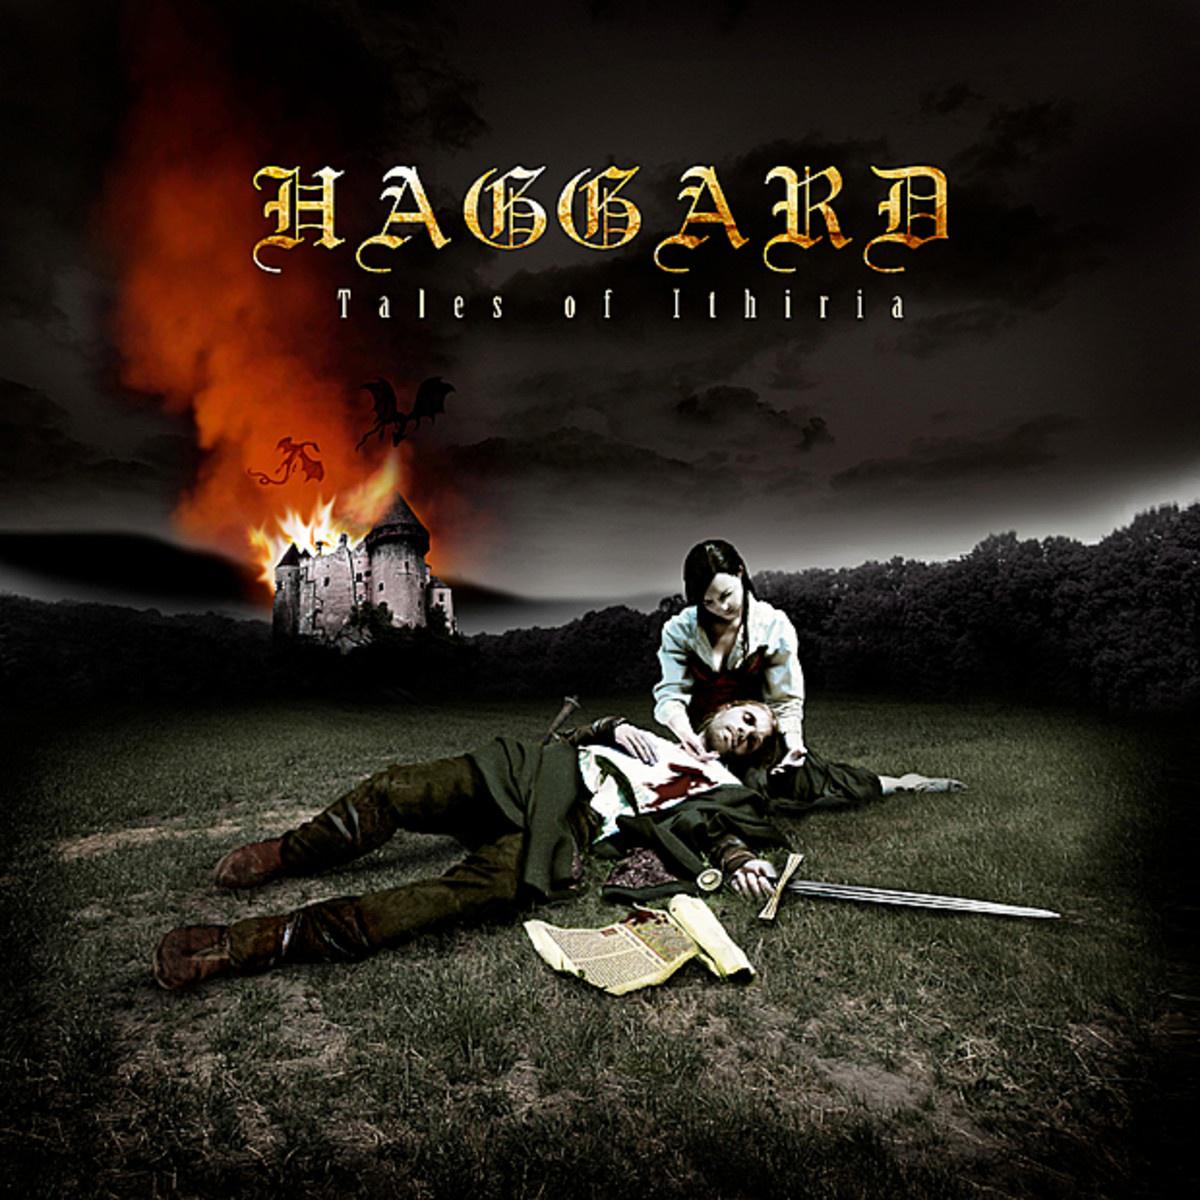 Haggard - Chapter III: La Terra Santa